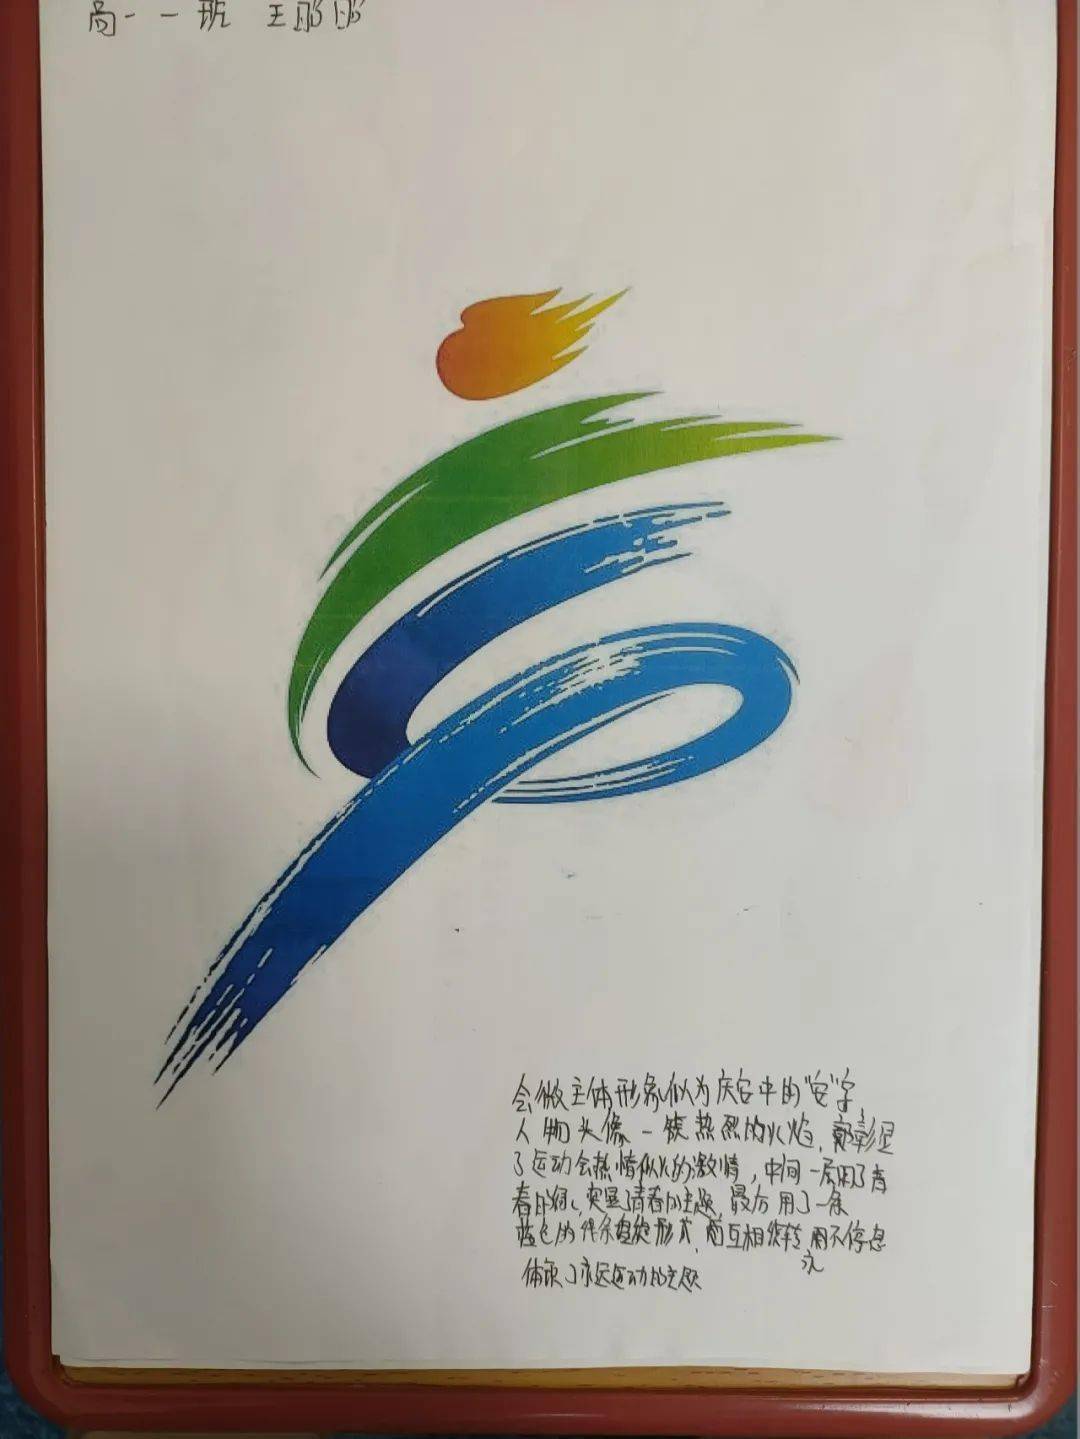 庆高动态第八届体育艺术节会徽出炉